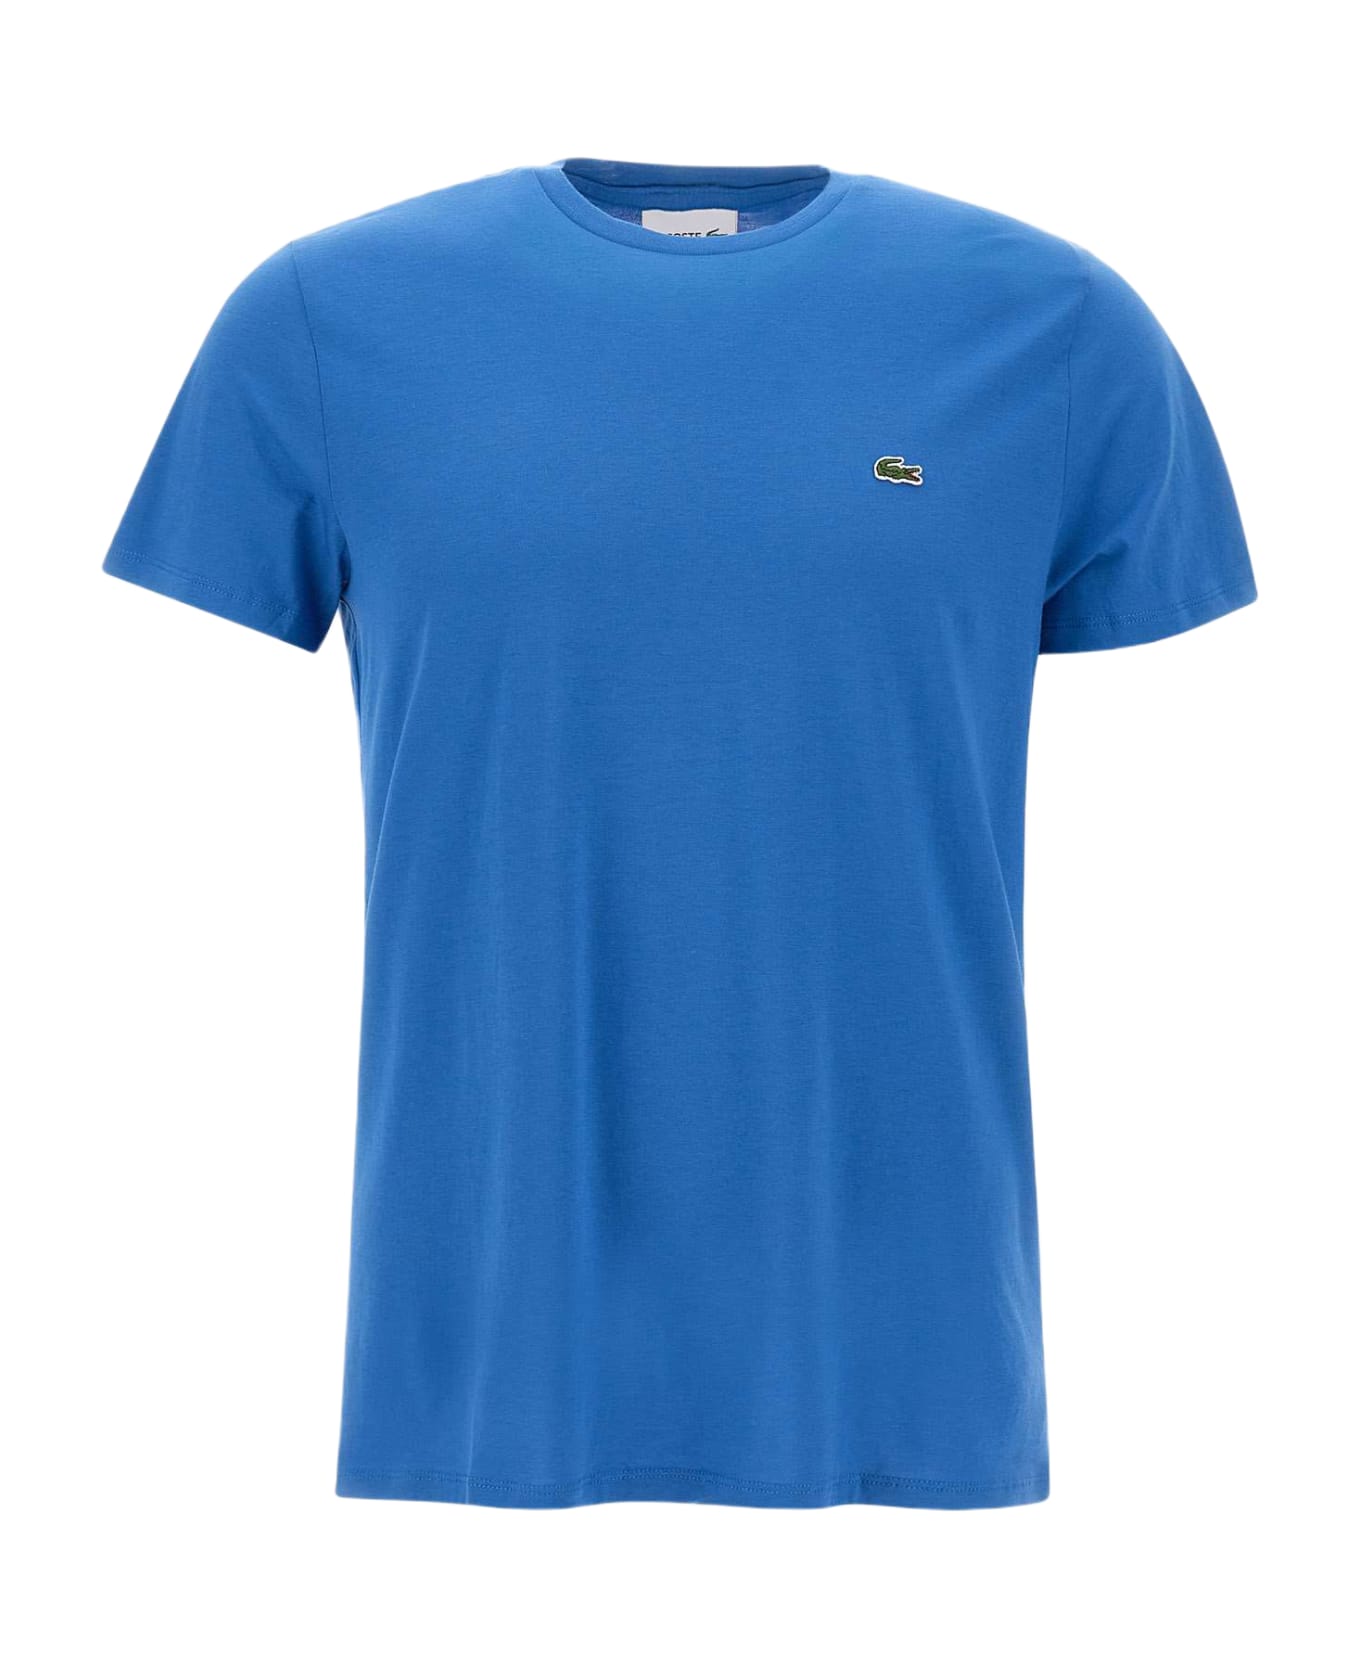 Lacoste Cotton T-shirt - BLUE